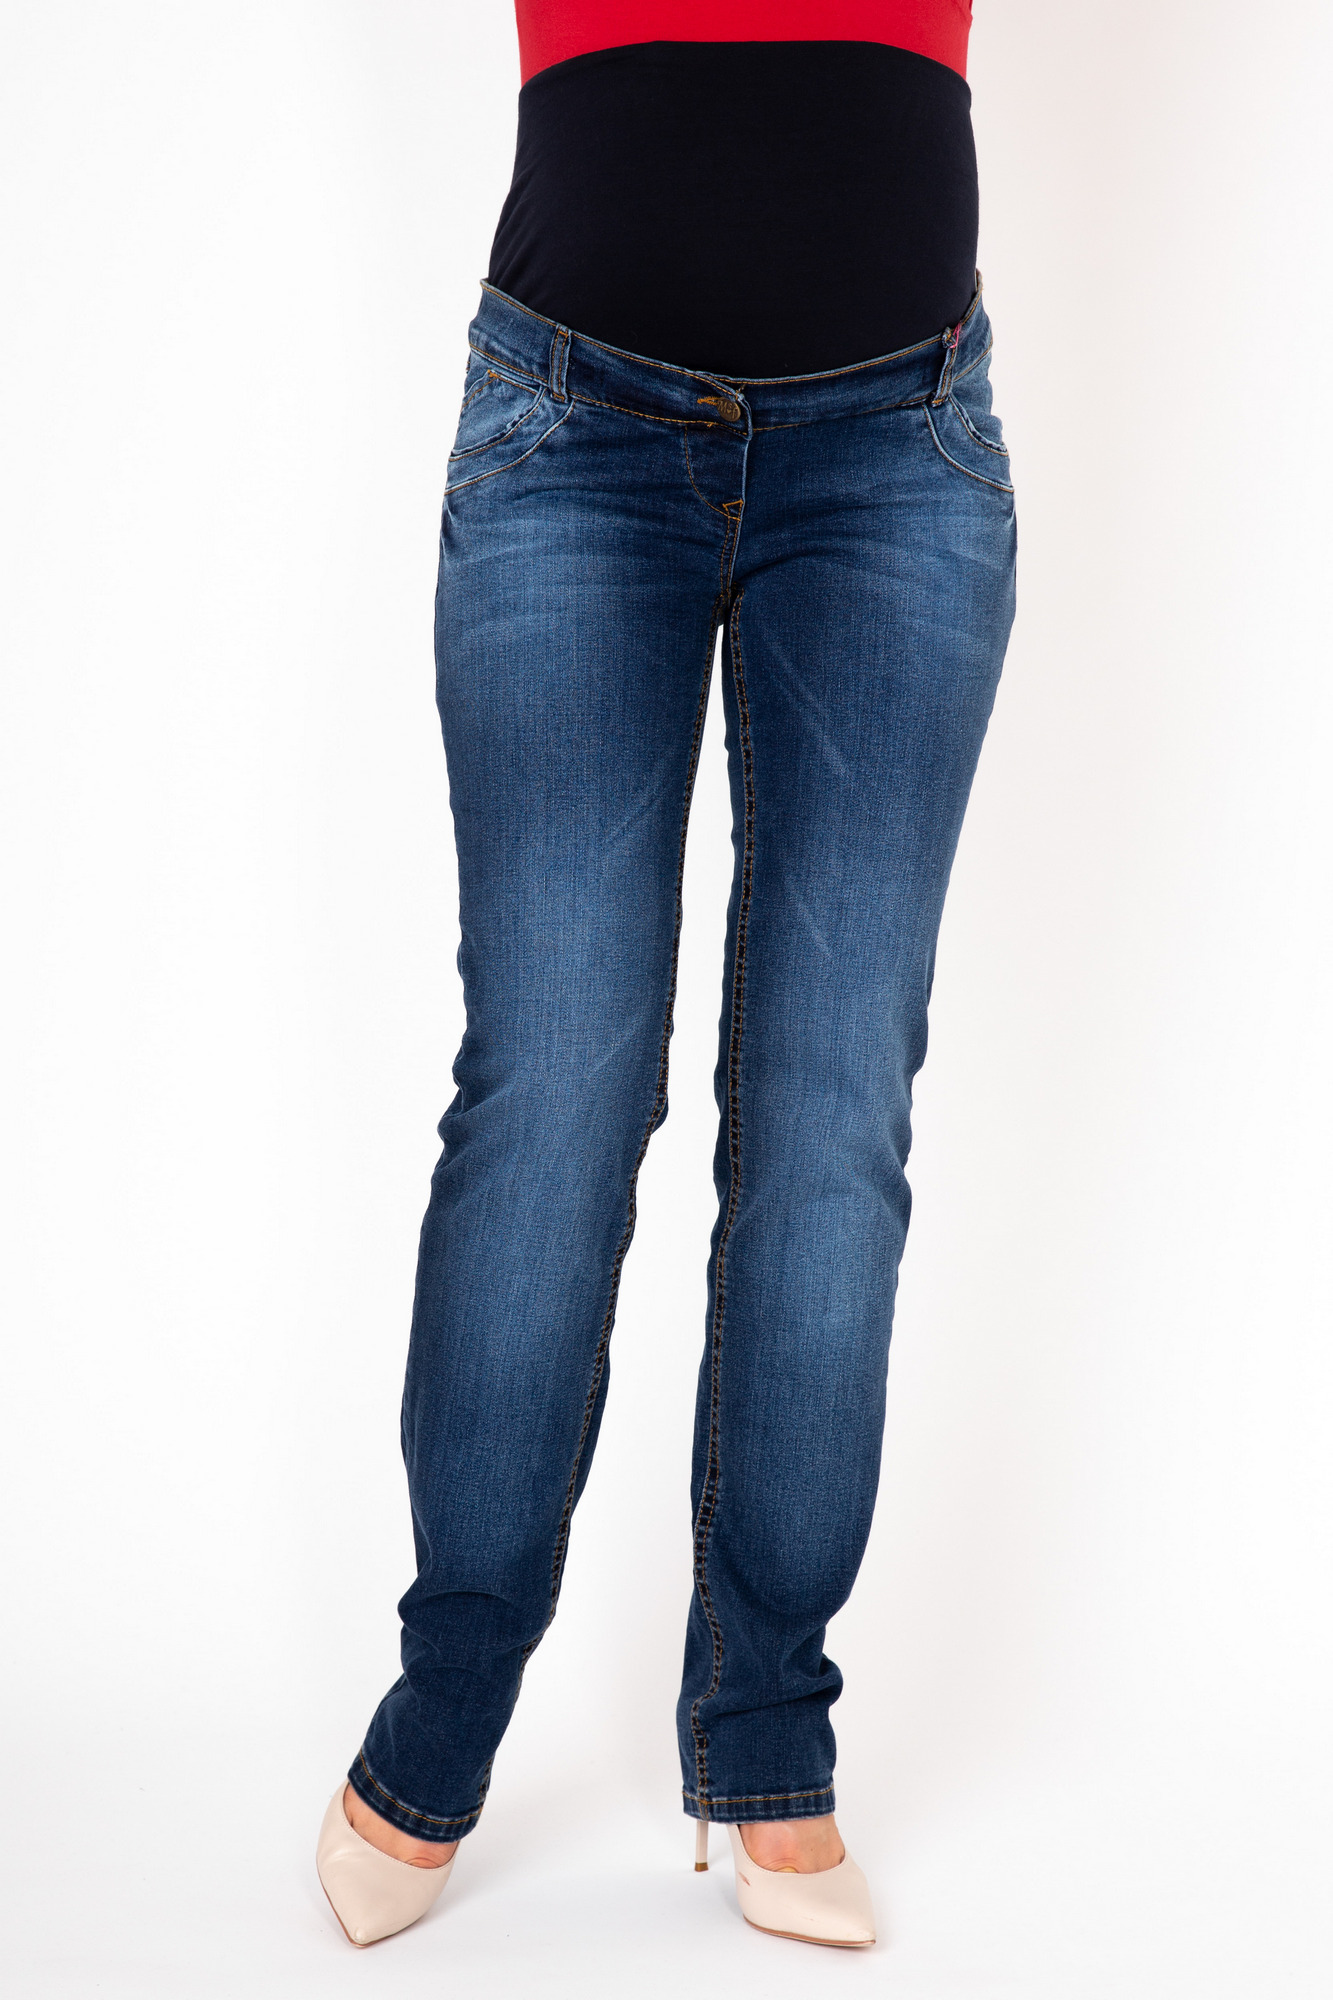 Фото джинсы для беременных MAMA`S FANTASY, прямые, средняя посадка, вставка от магазина СкороМама, синий, размеры.